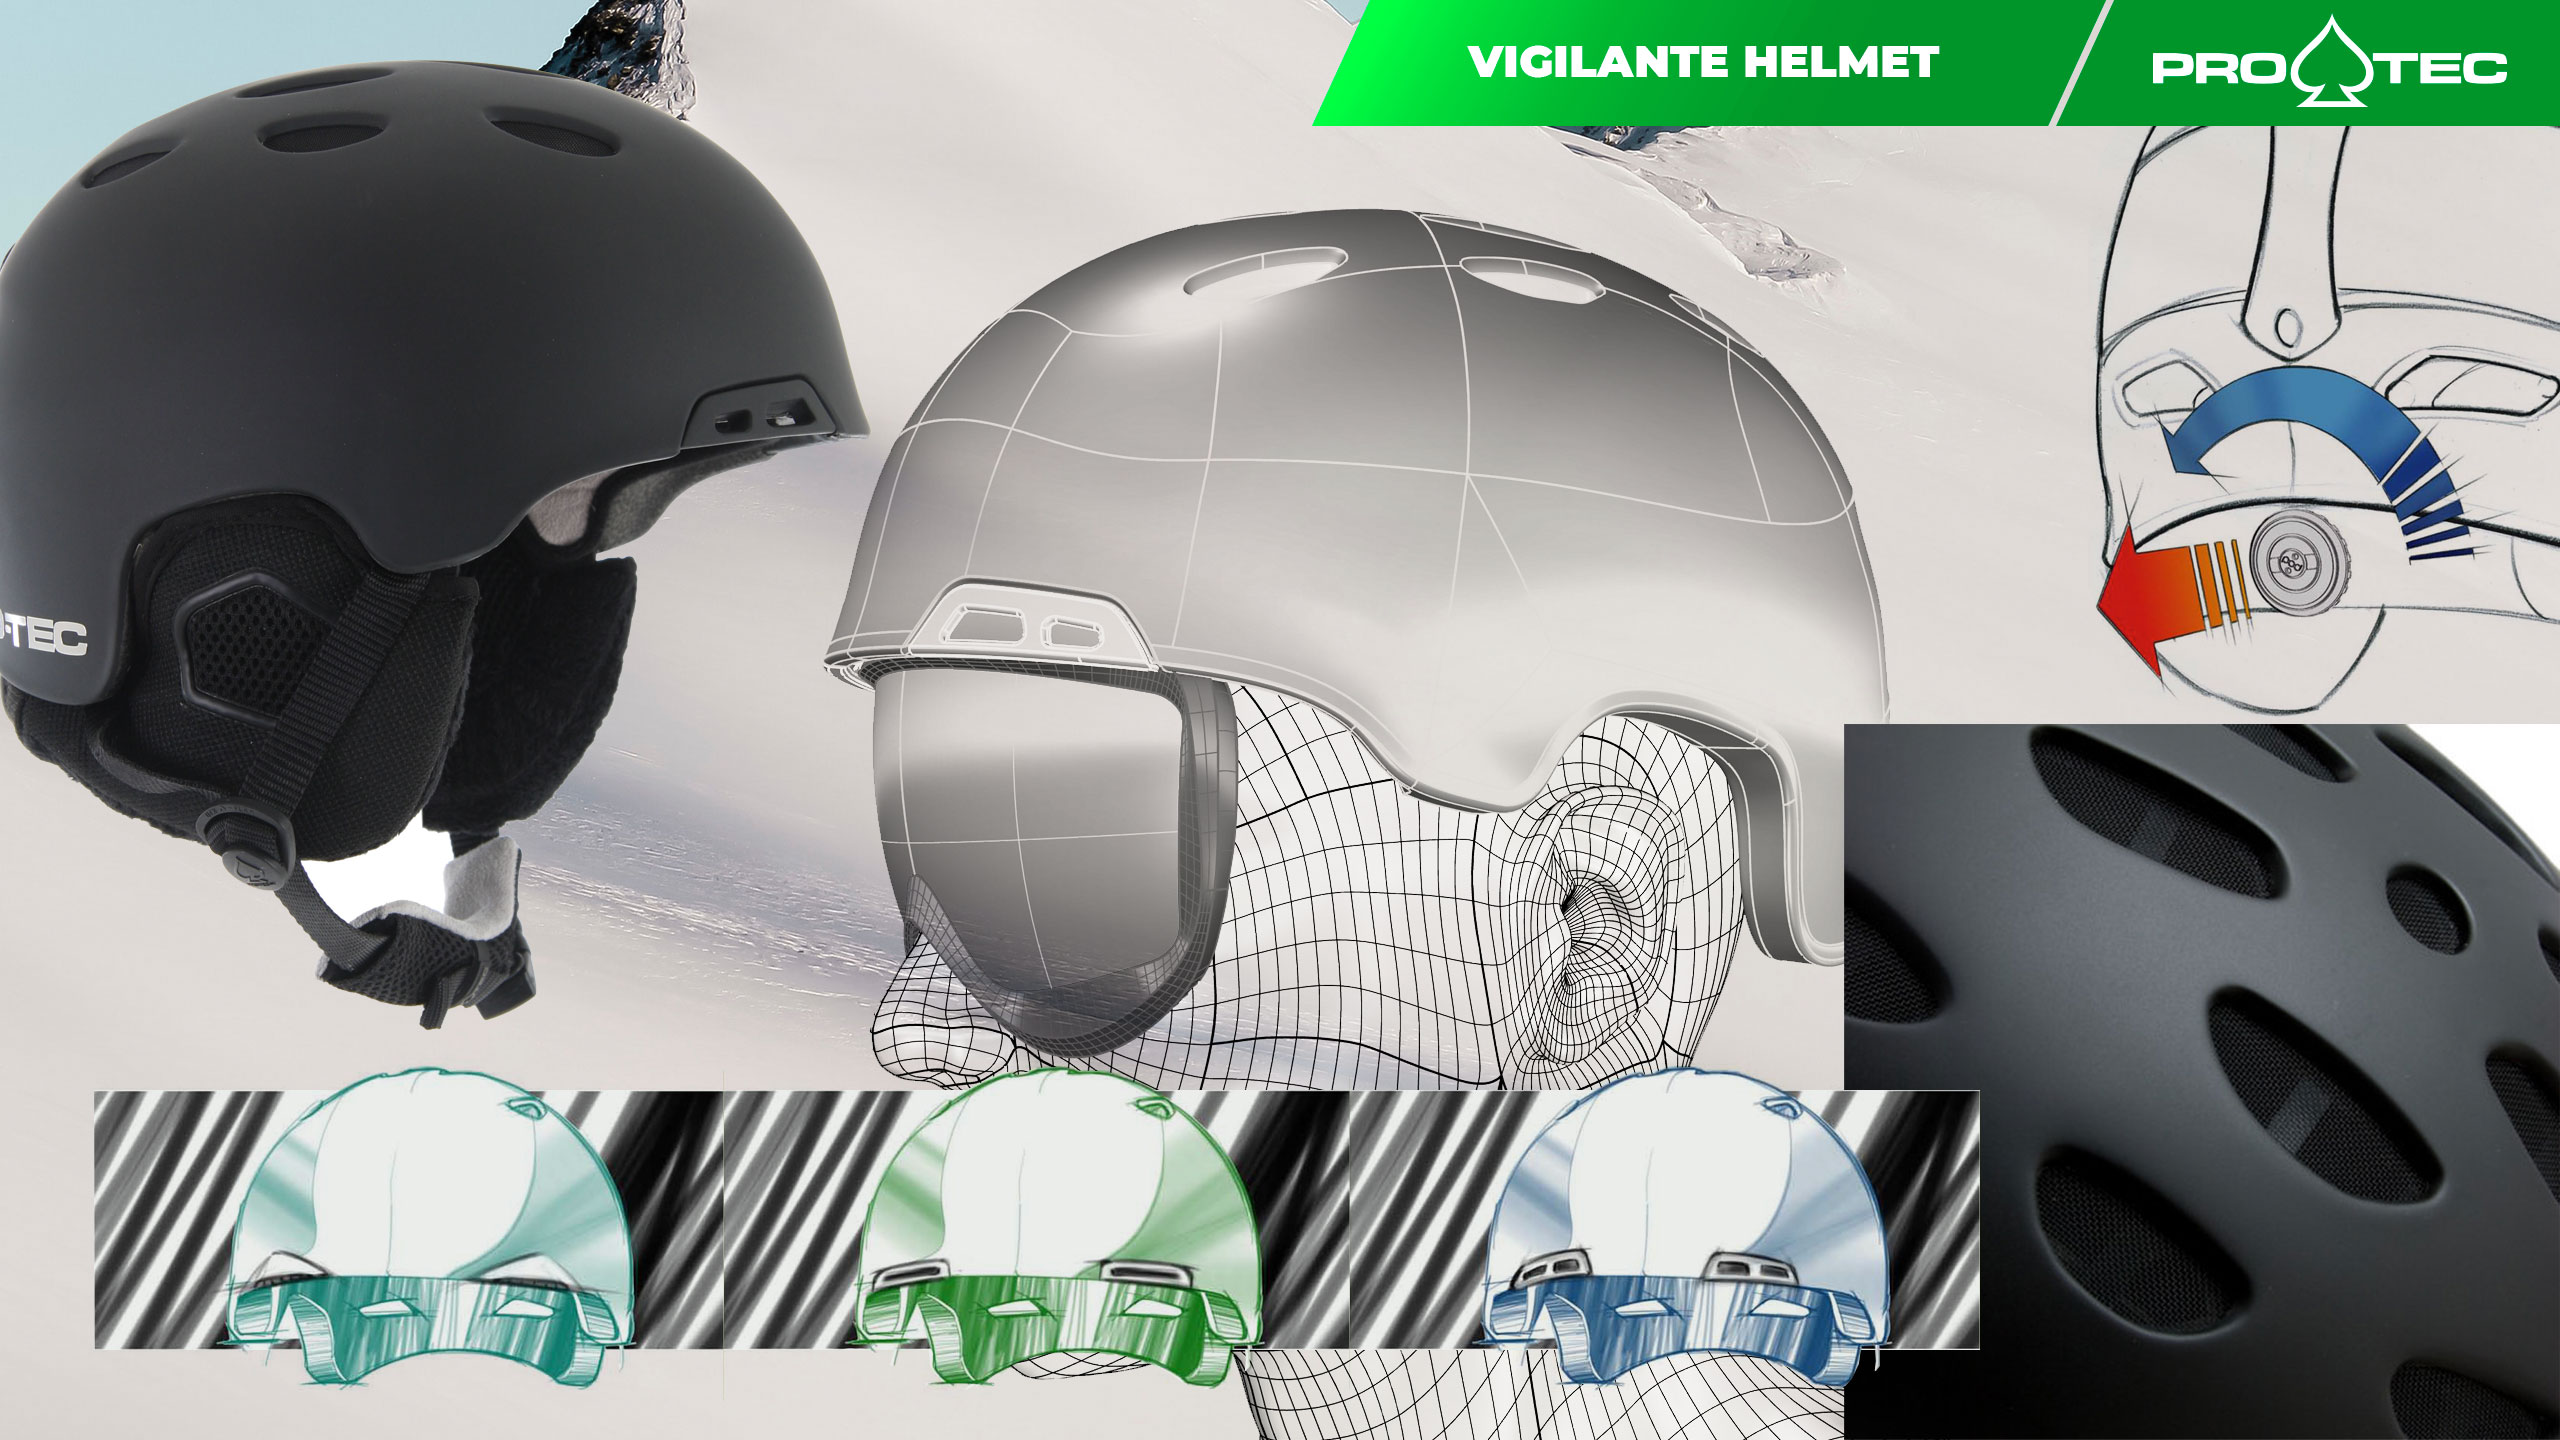 Pro-tec Vigilante Helmet